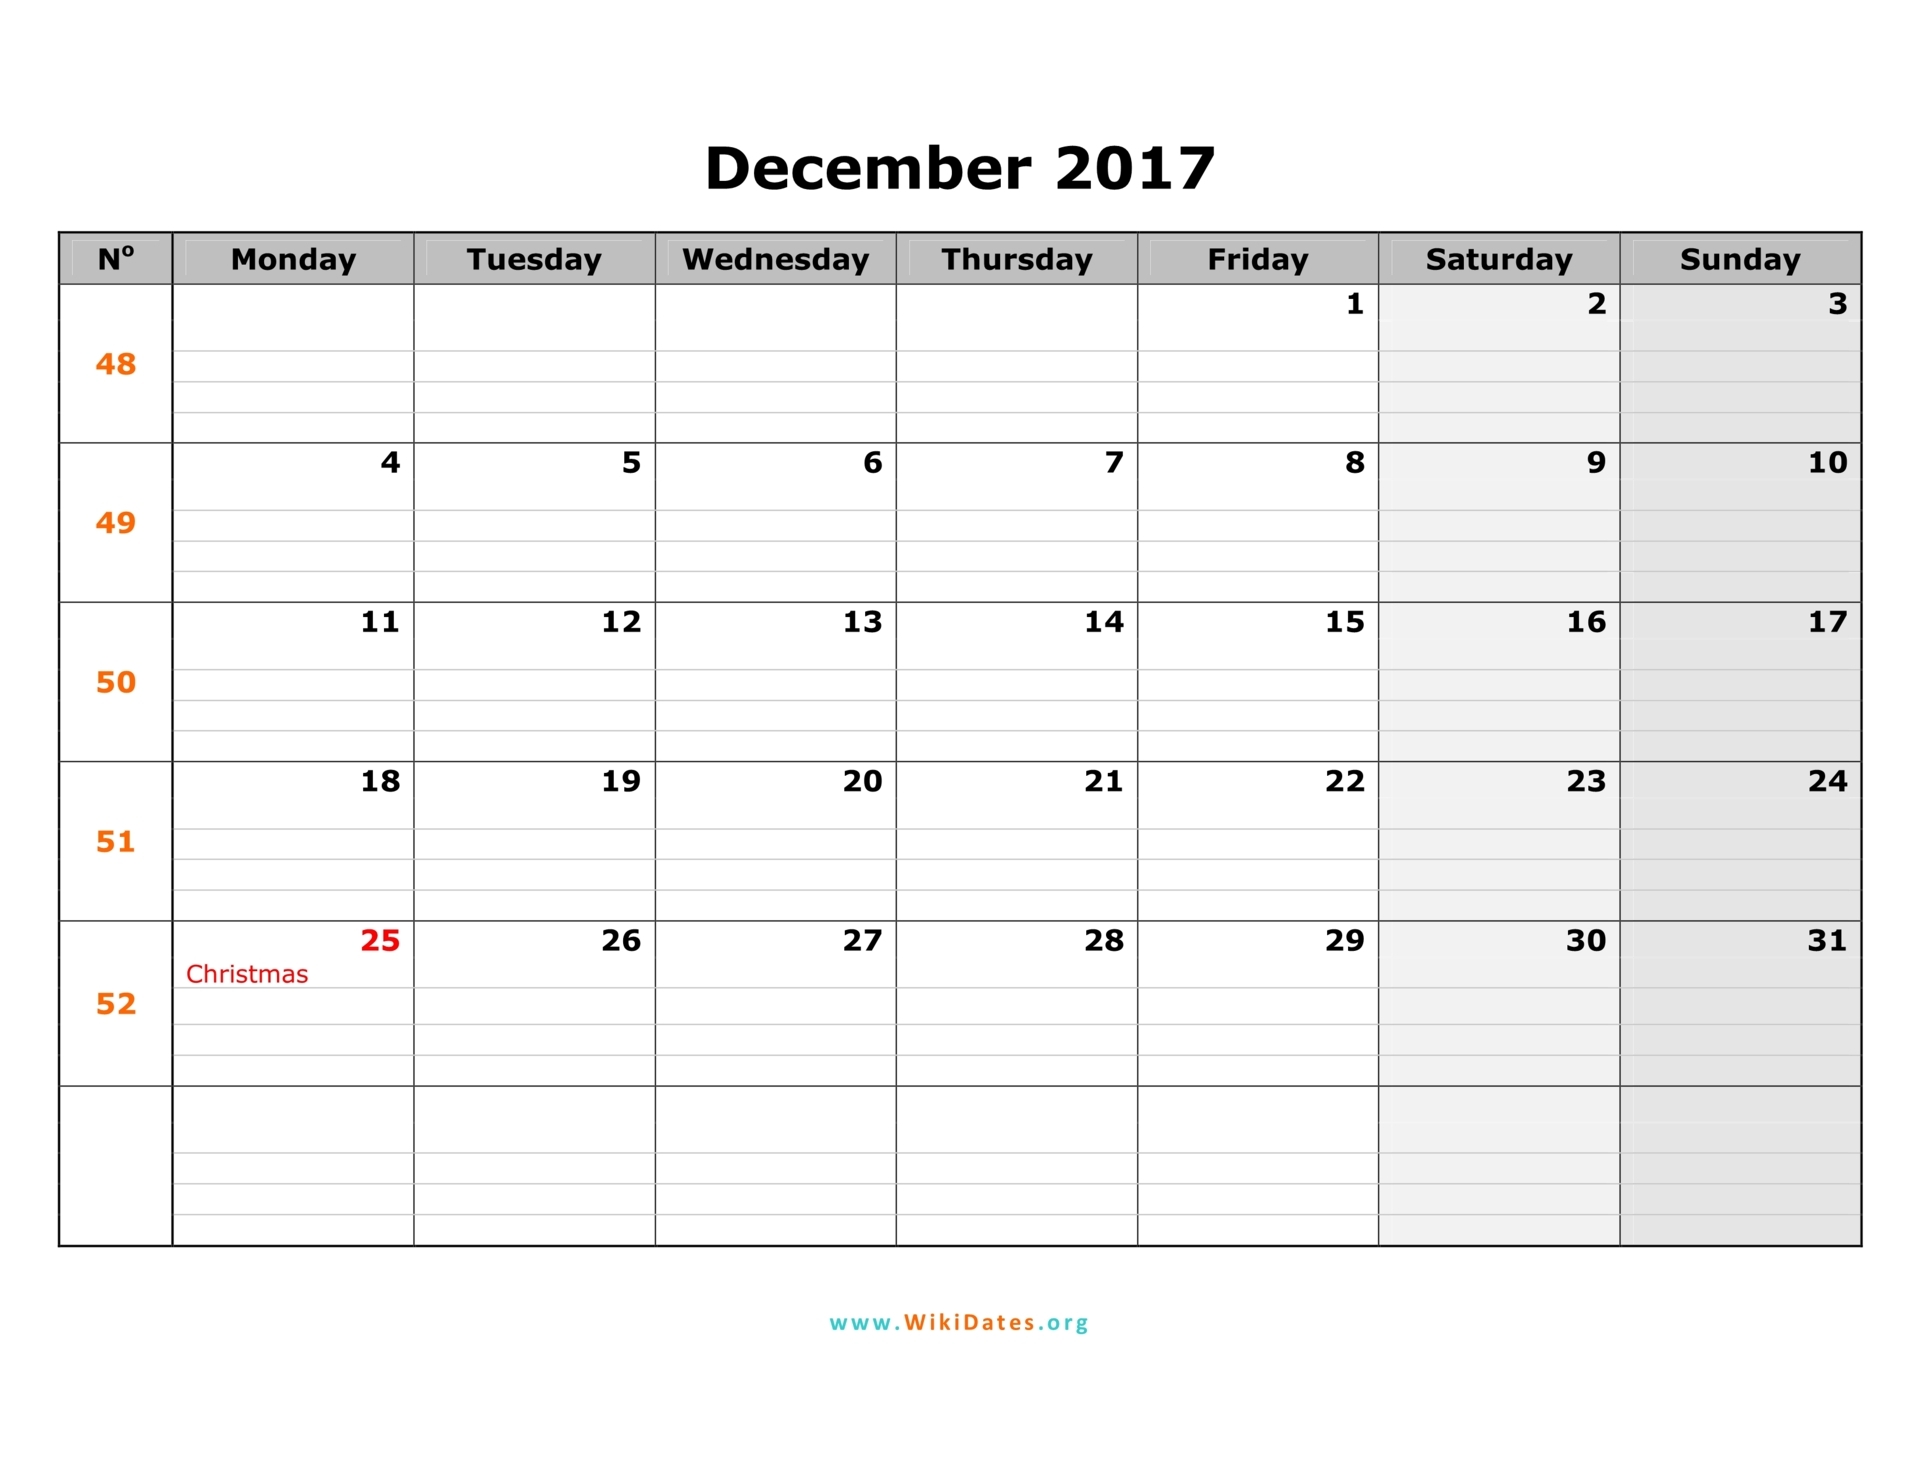 december-2017-calendar-wikidates